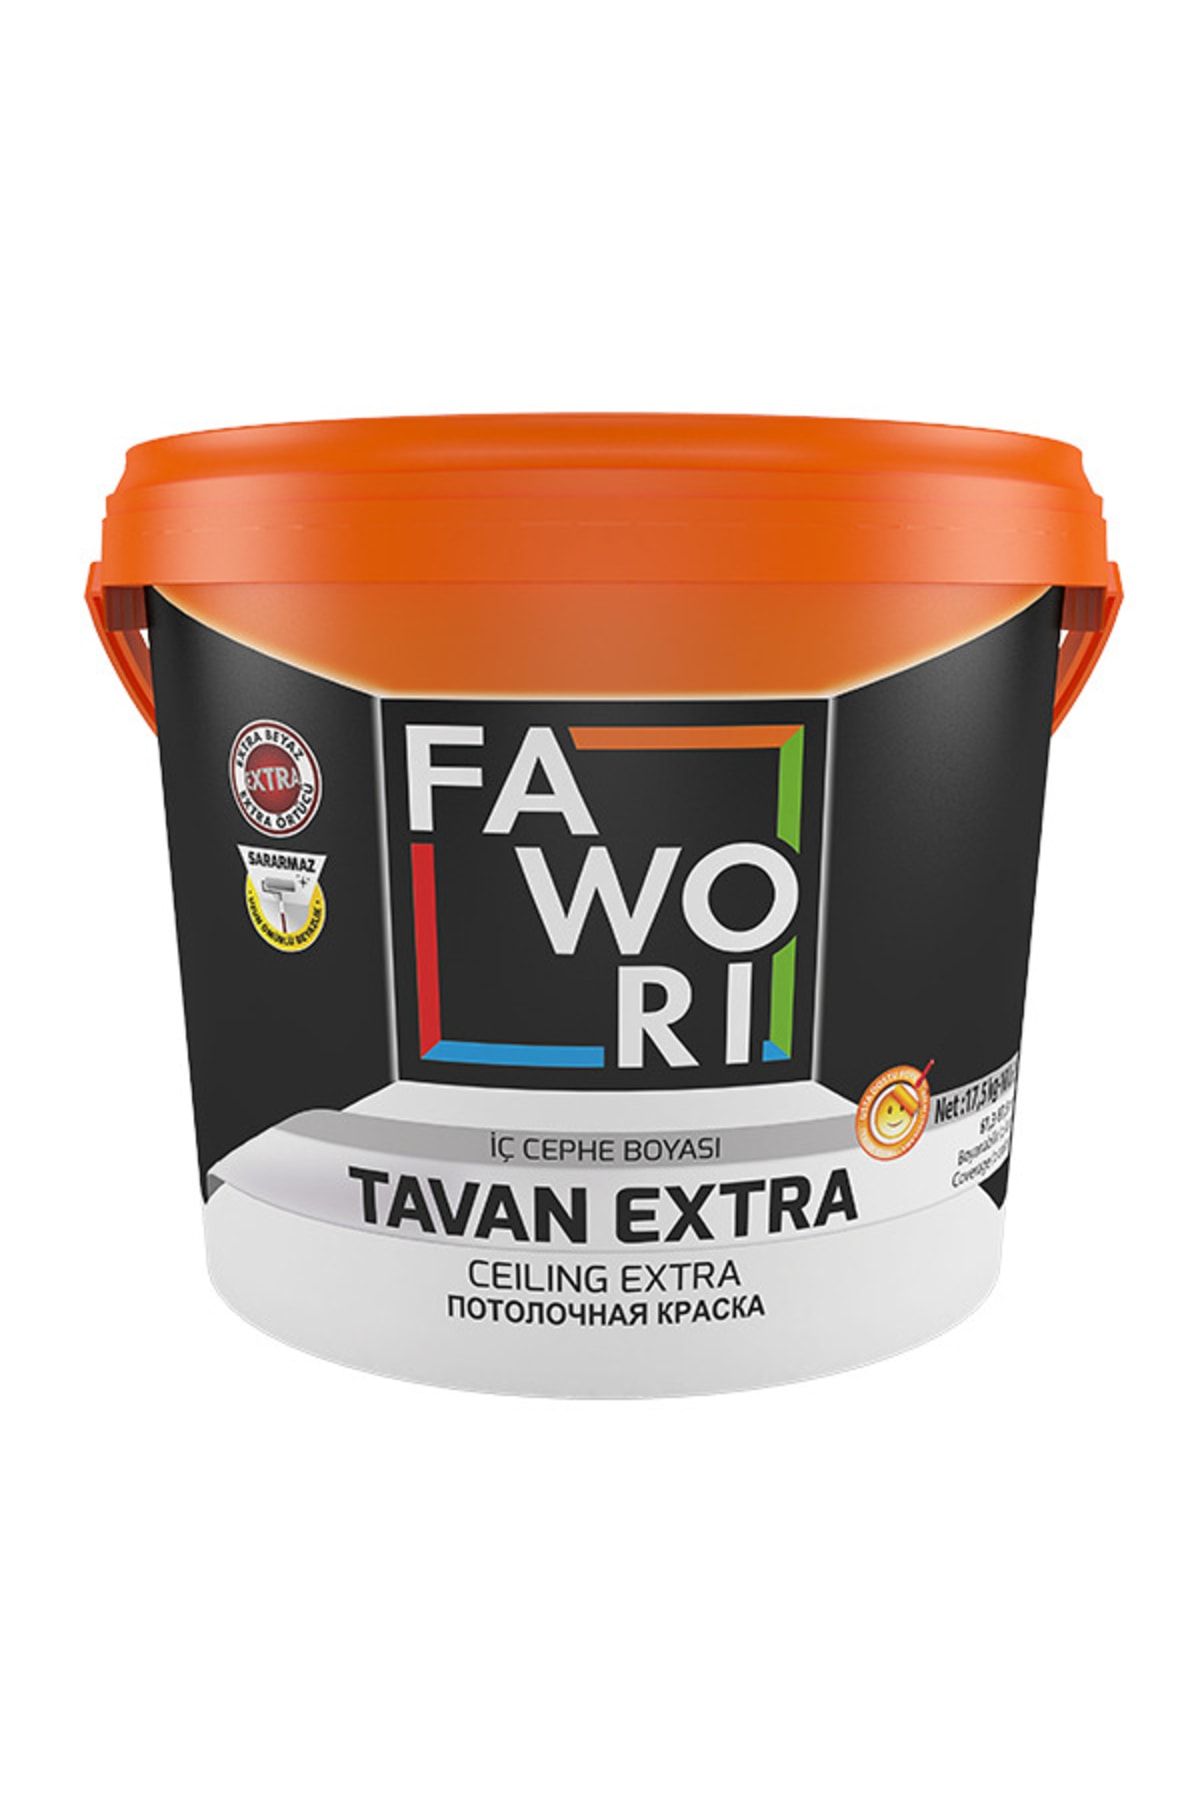 Fawori Favori Tavan Extra